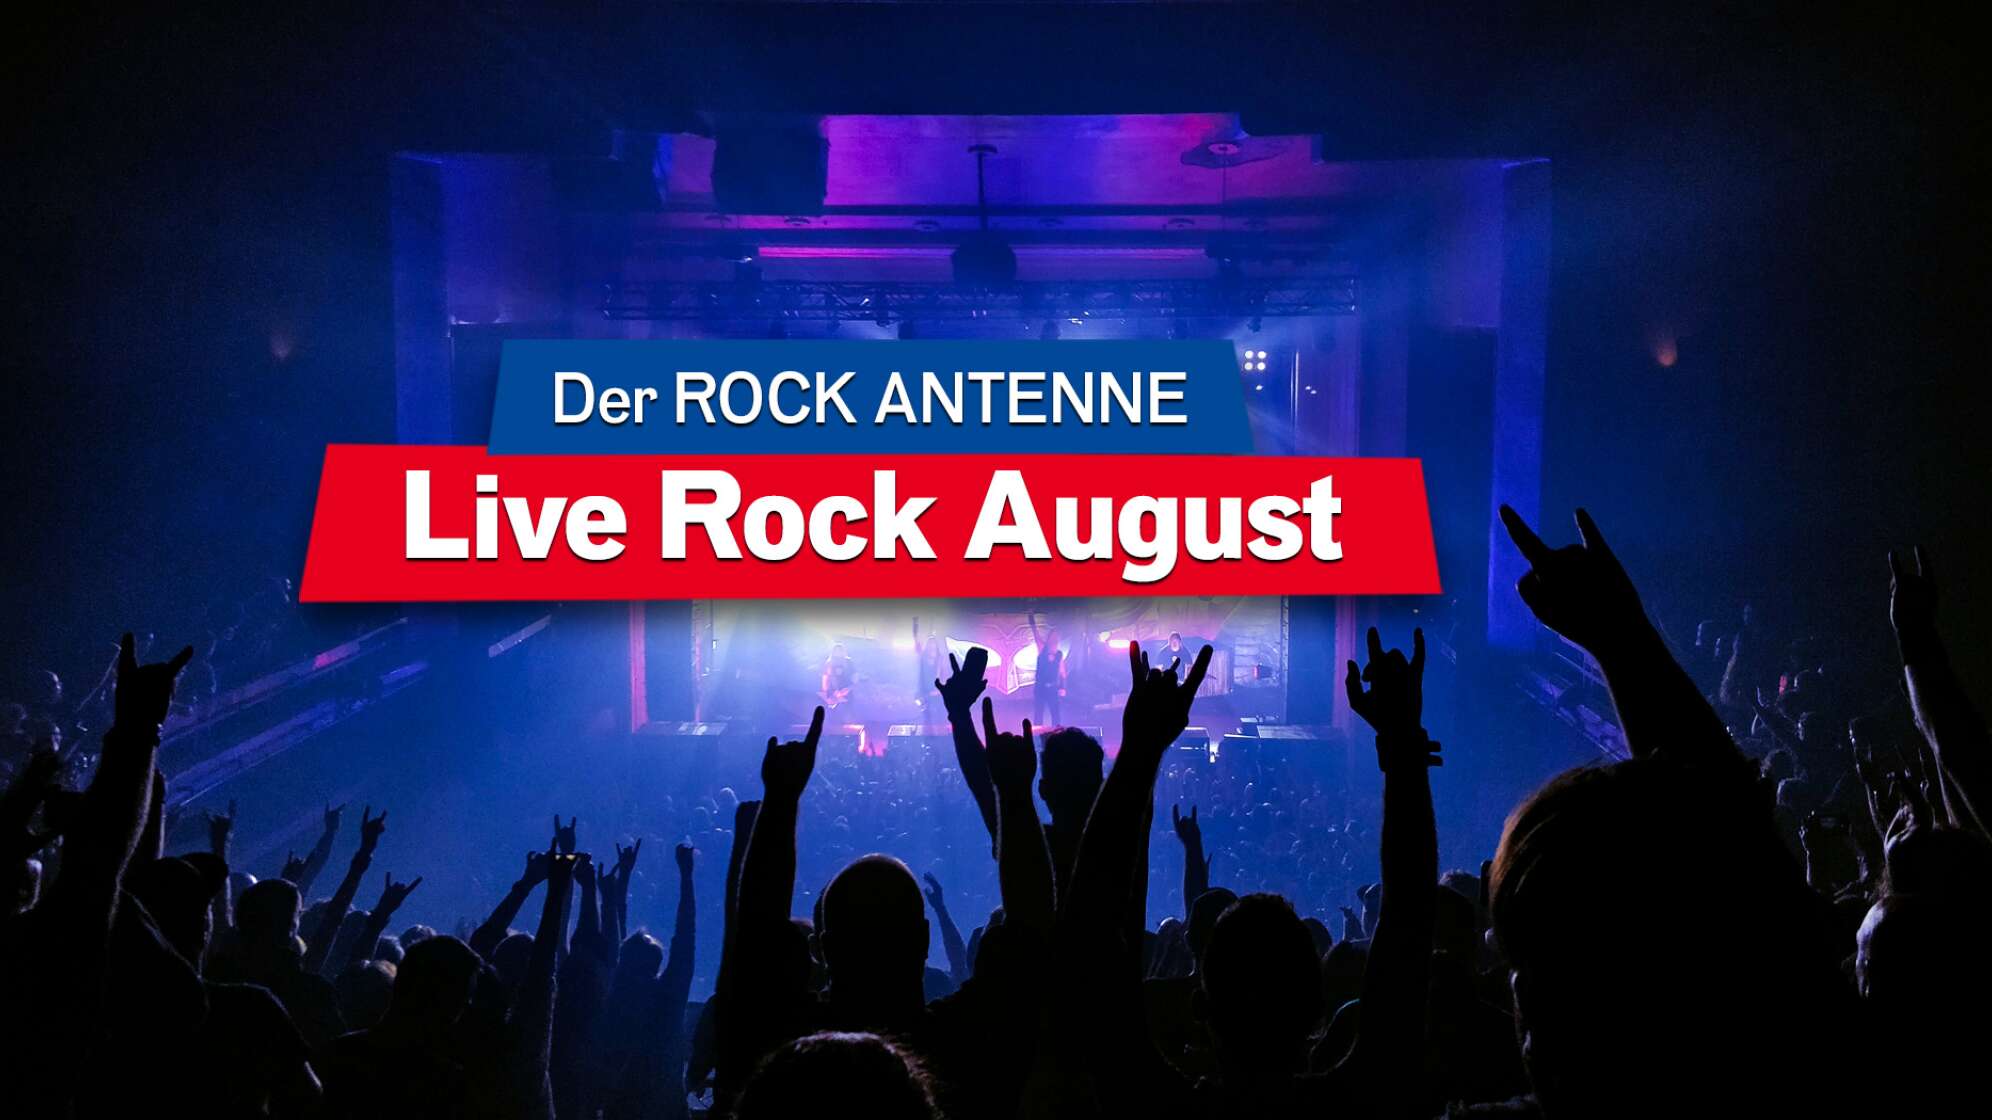 Blick auf die Bühne bei einem Konzert, Aufschrift "Der ROCK ANTENNE Live Rock August"